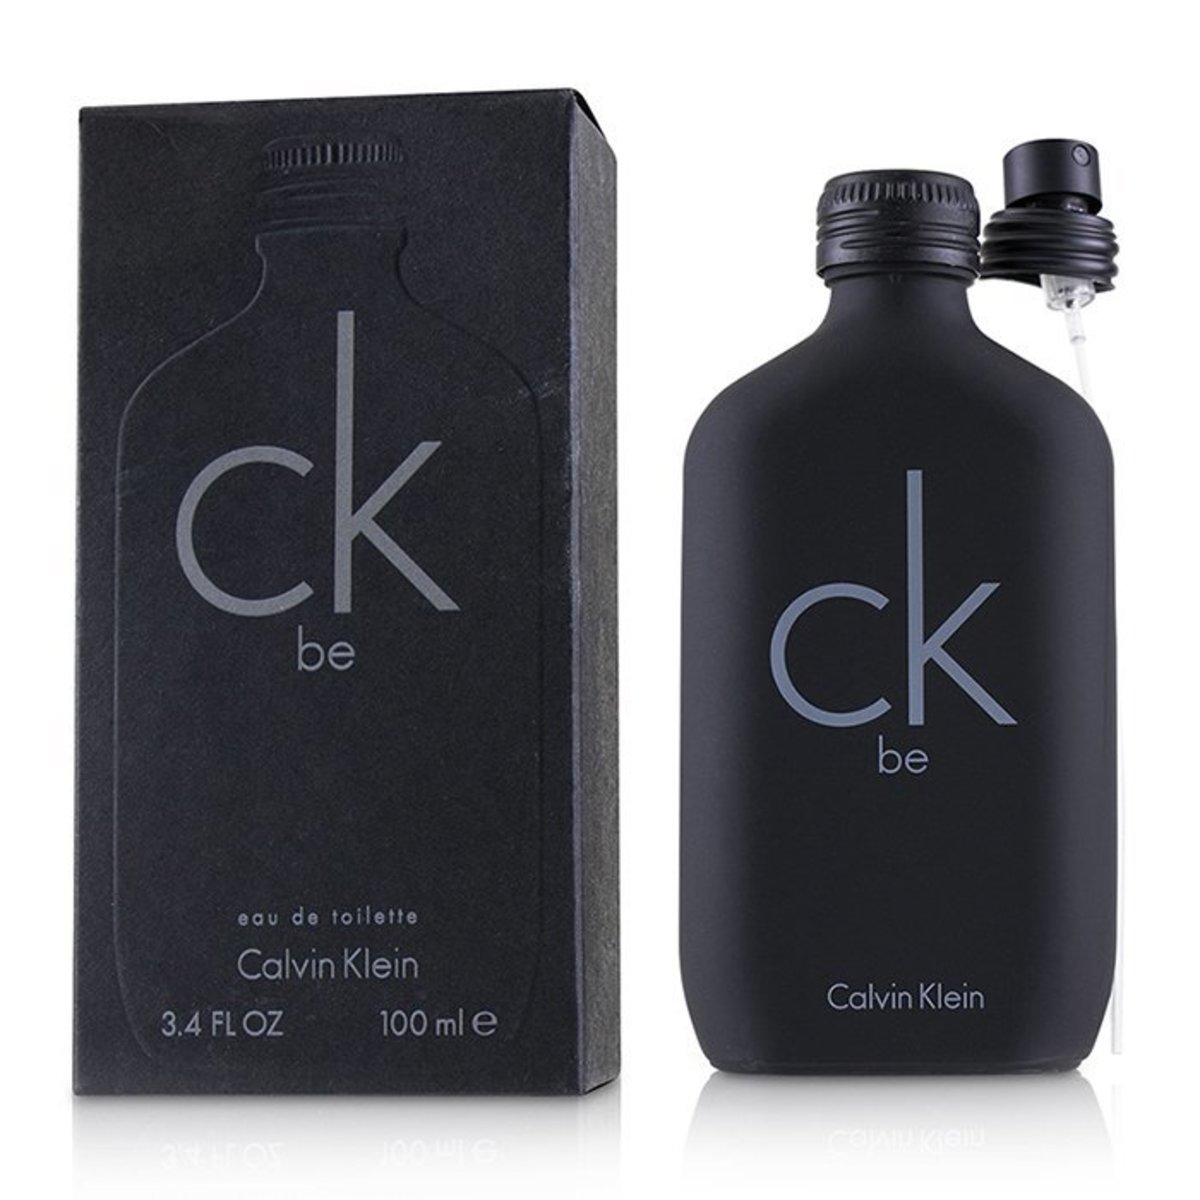 Calvin Klein | CK BE EDT 100ml(Parallel 